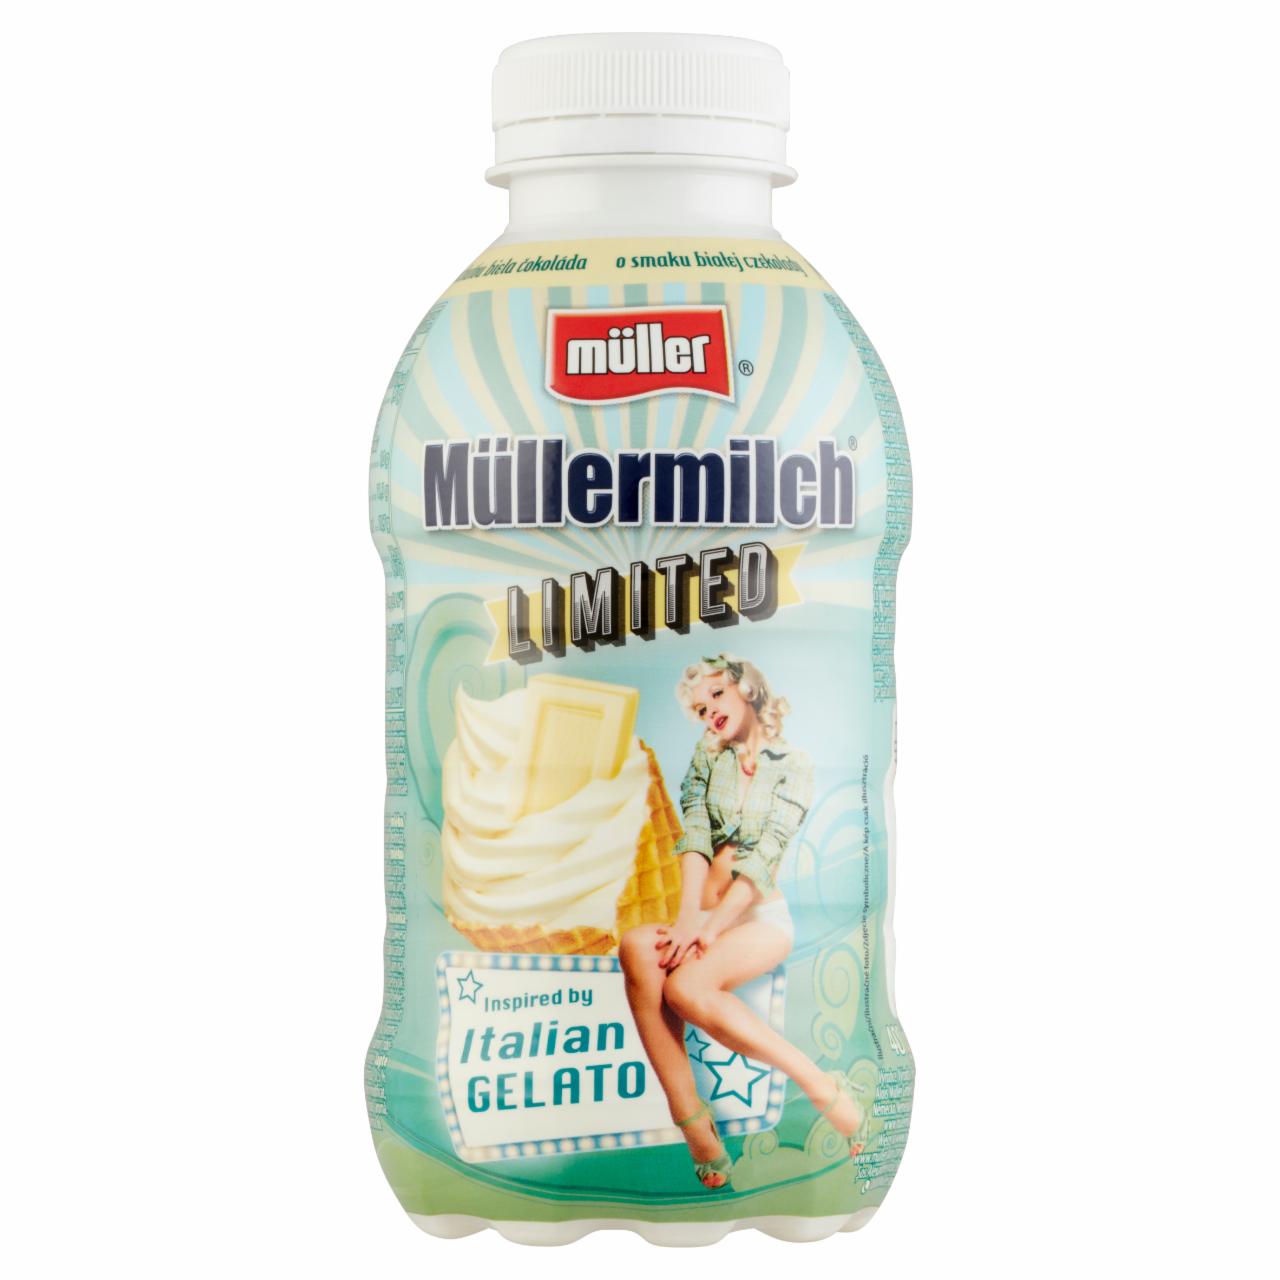 Képek - Müller Müllermilch fehércsokoládé ízű zsírszegény tejital, hozzáadott vitaminokkal 400 g